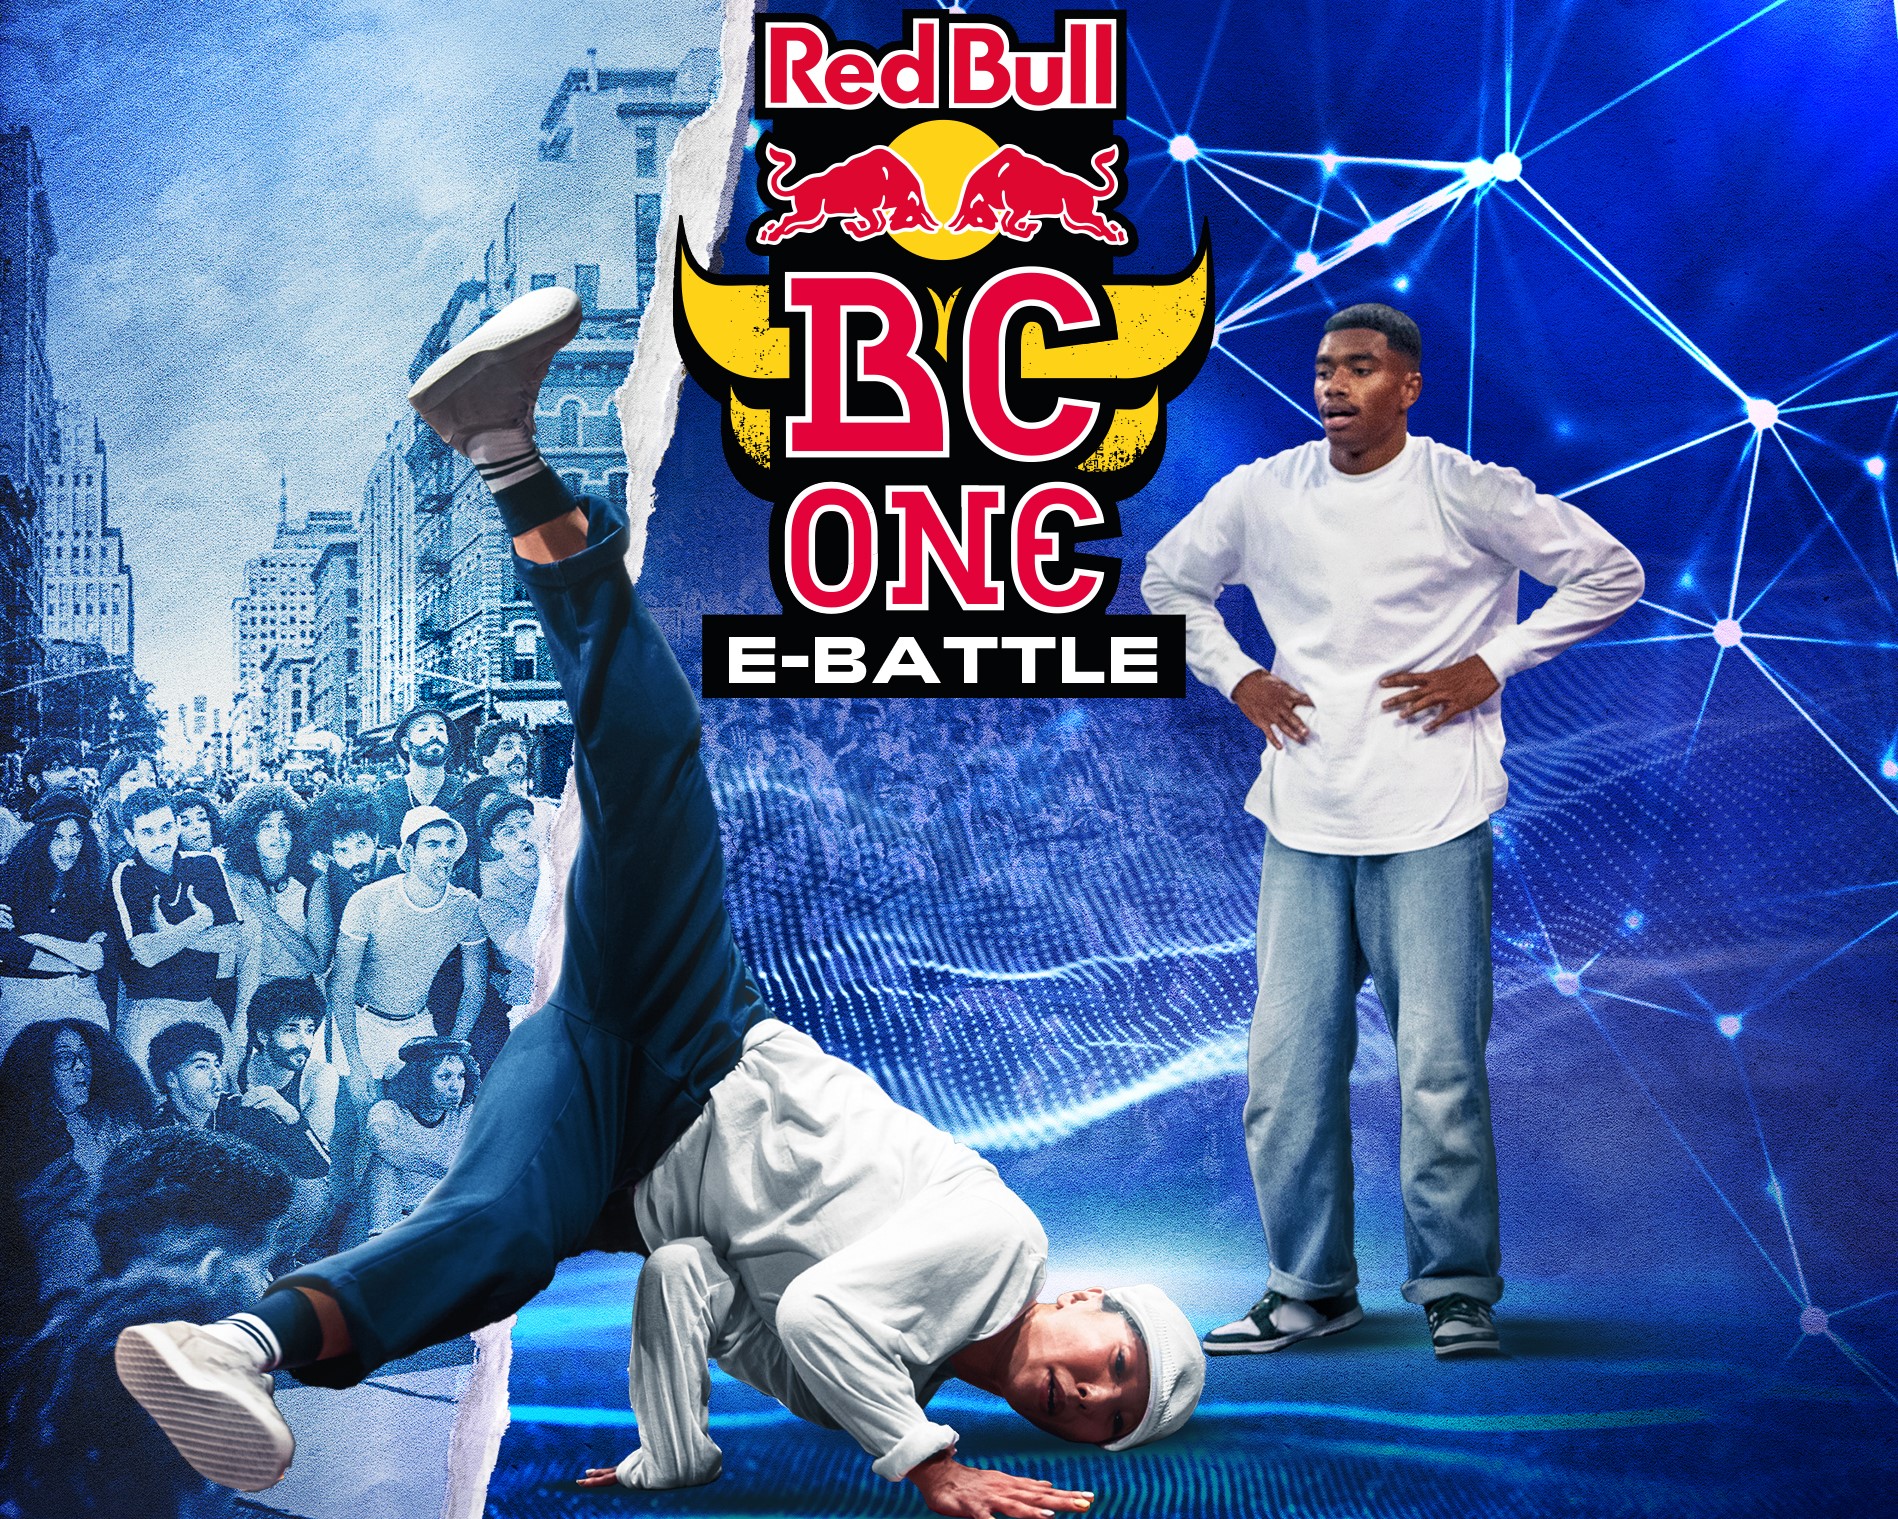 グローバルオンライン ブレイキンバトル Red Bull One E Battleが開催 参加者募集中 応募締切は4月19日 火 Fineplay